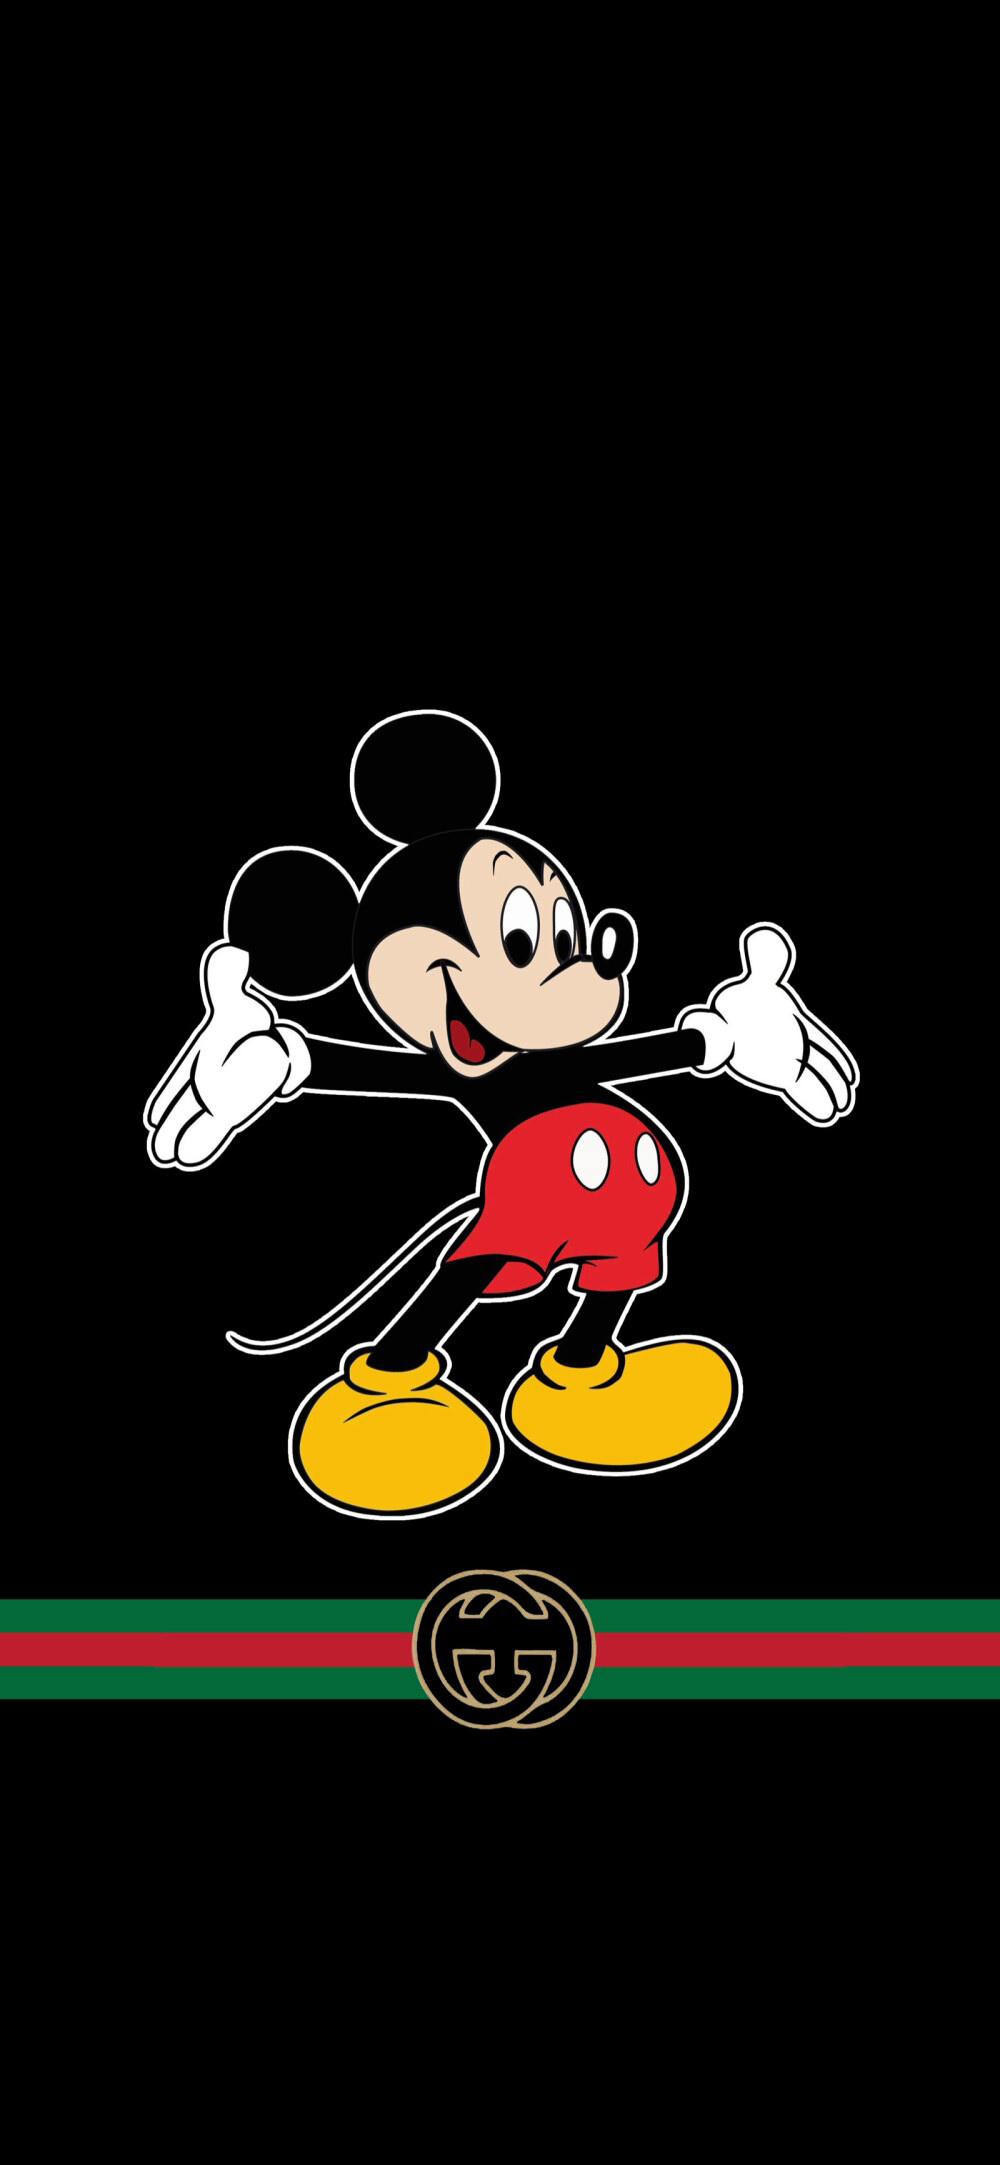 Hình Gucci Mickey nền đen giòn tuyệt đẹp